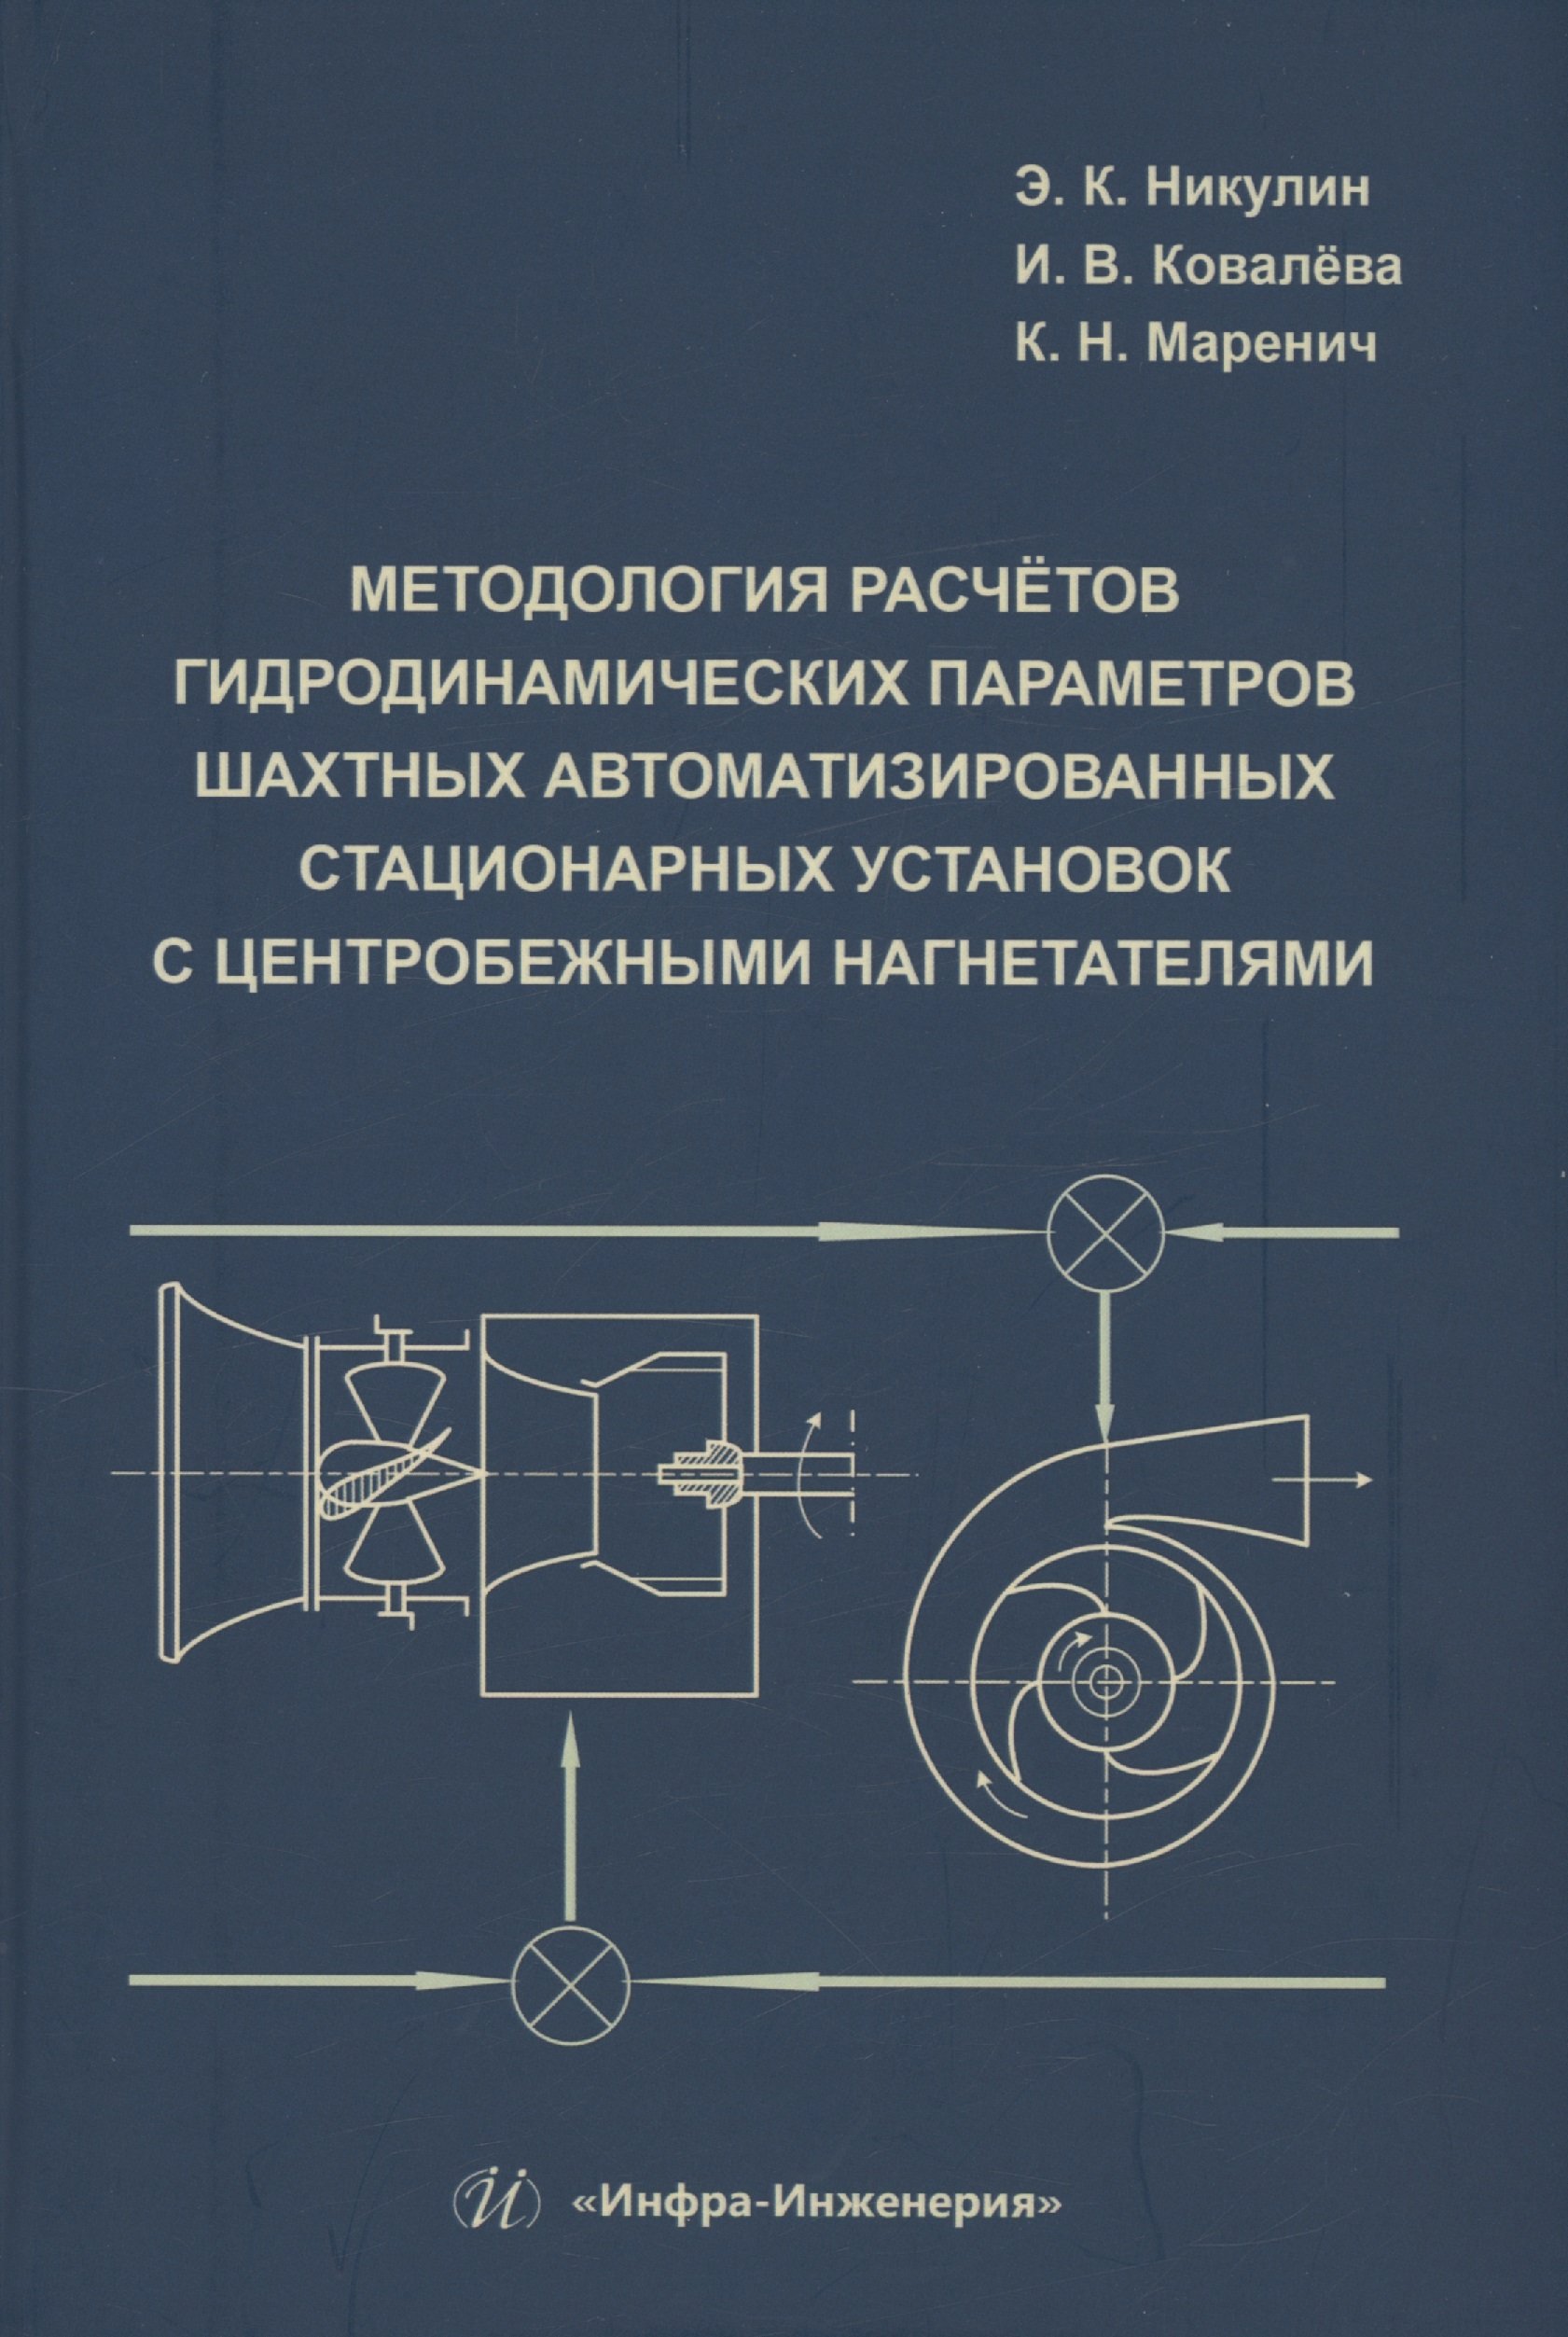 Методология расчётов гидродинамических параметров шахтных автоматизированных стационарных установок с центробежными нагнетателями